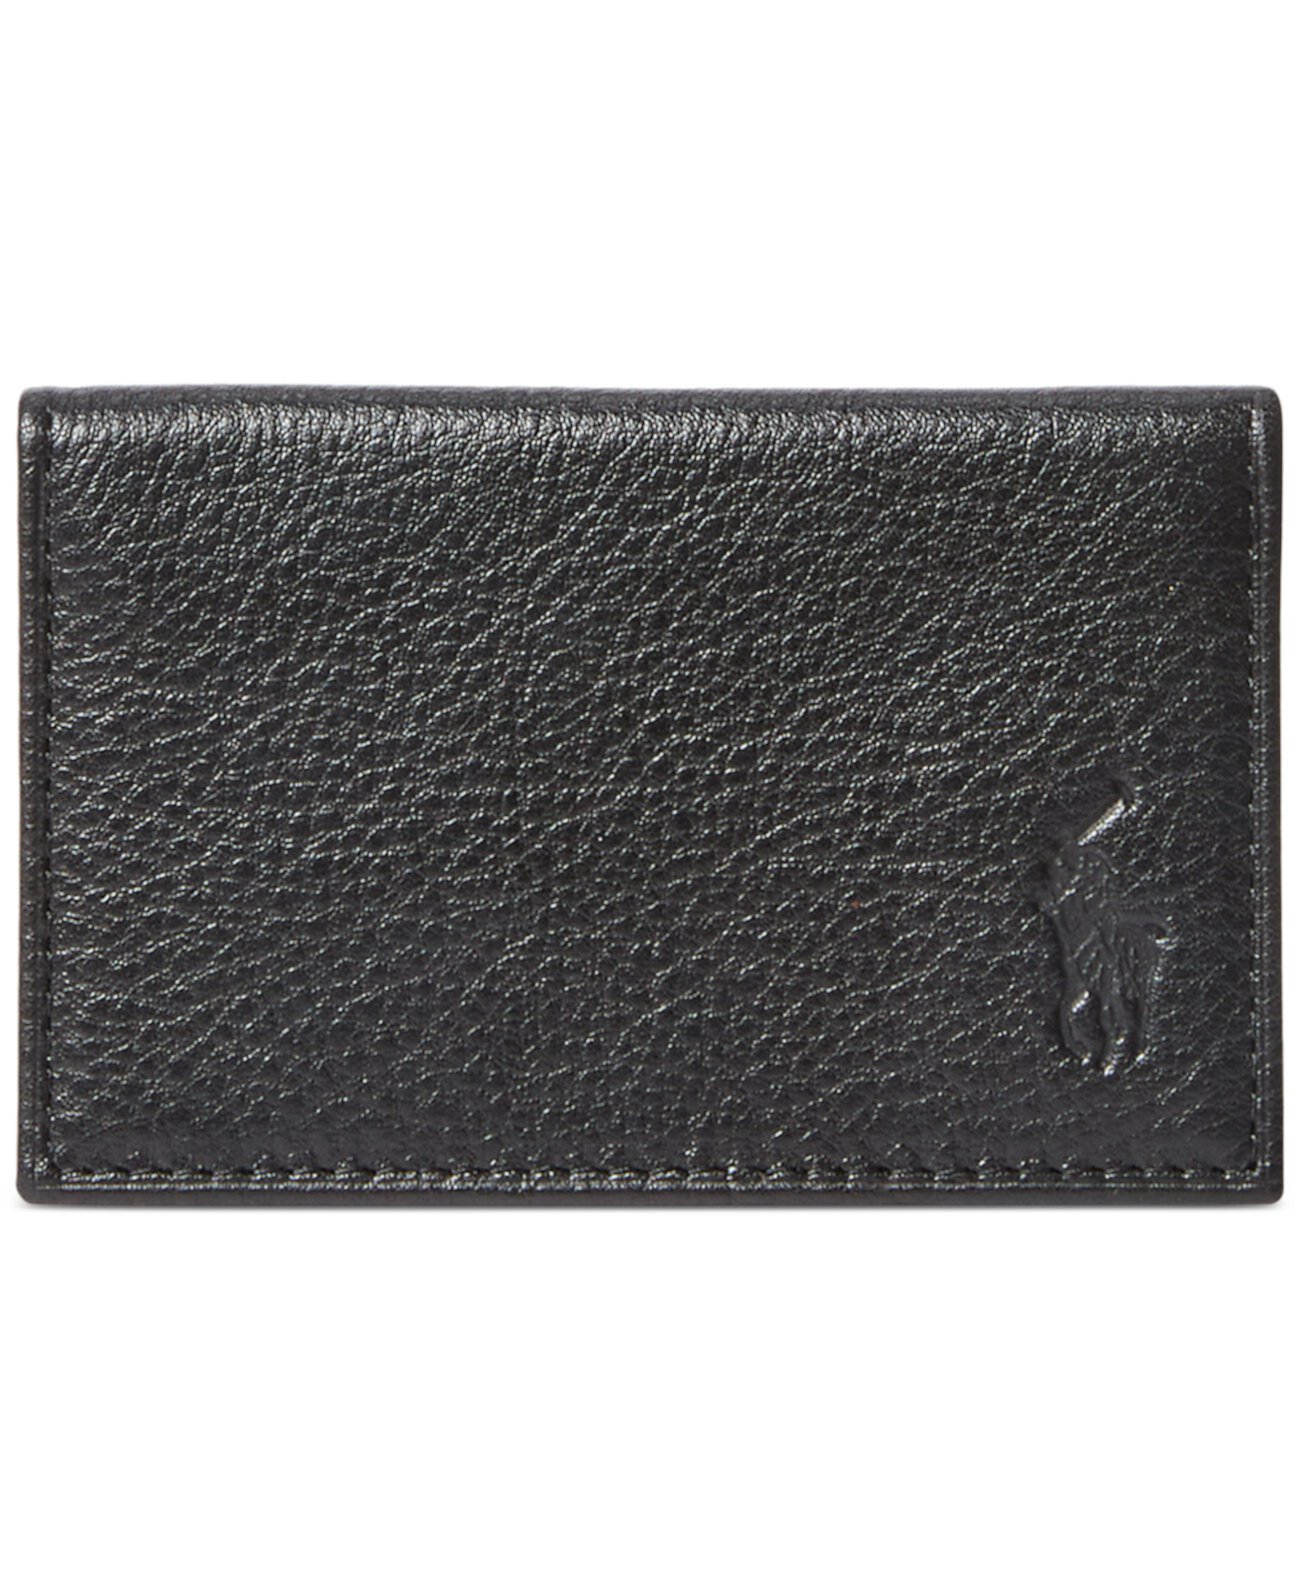 Мужской карточный кошелек из шагреневой кожи Polo Ralph Lauren